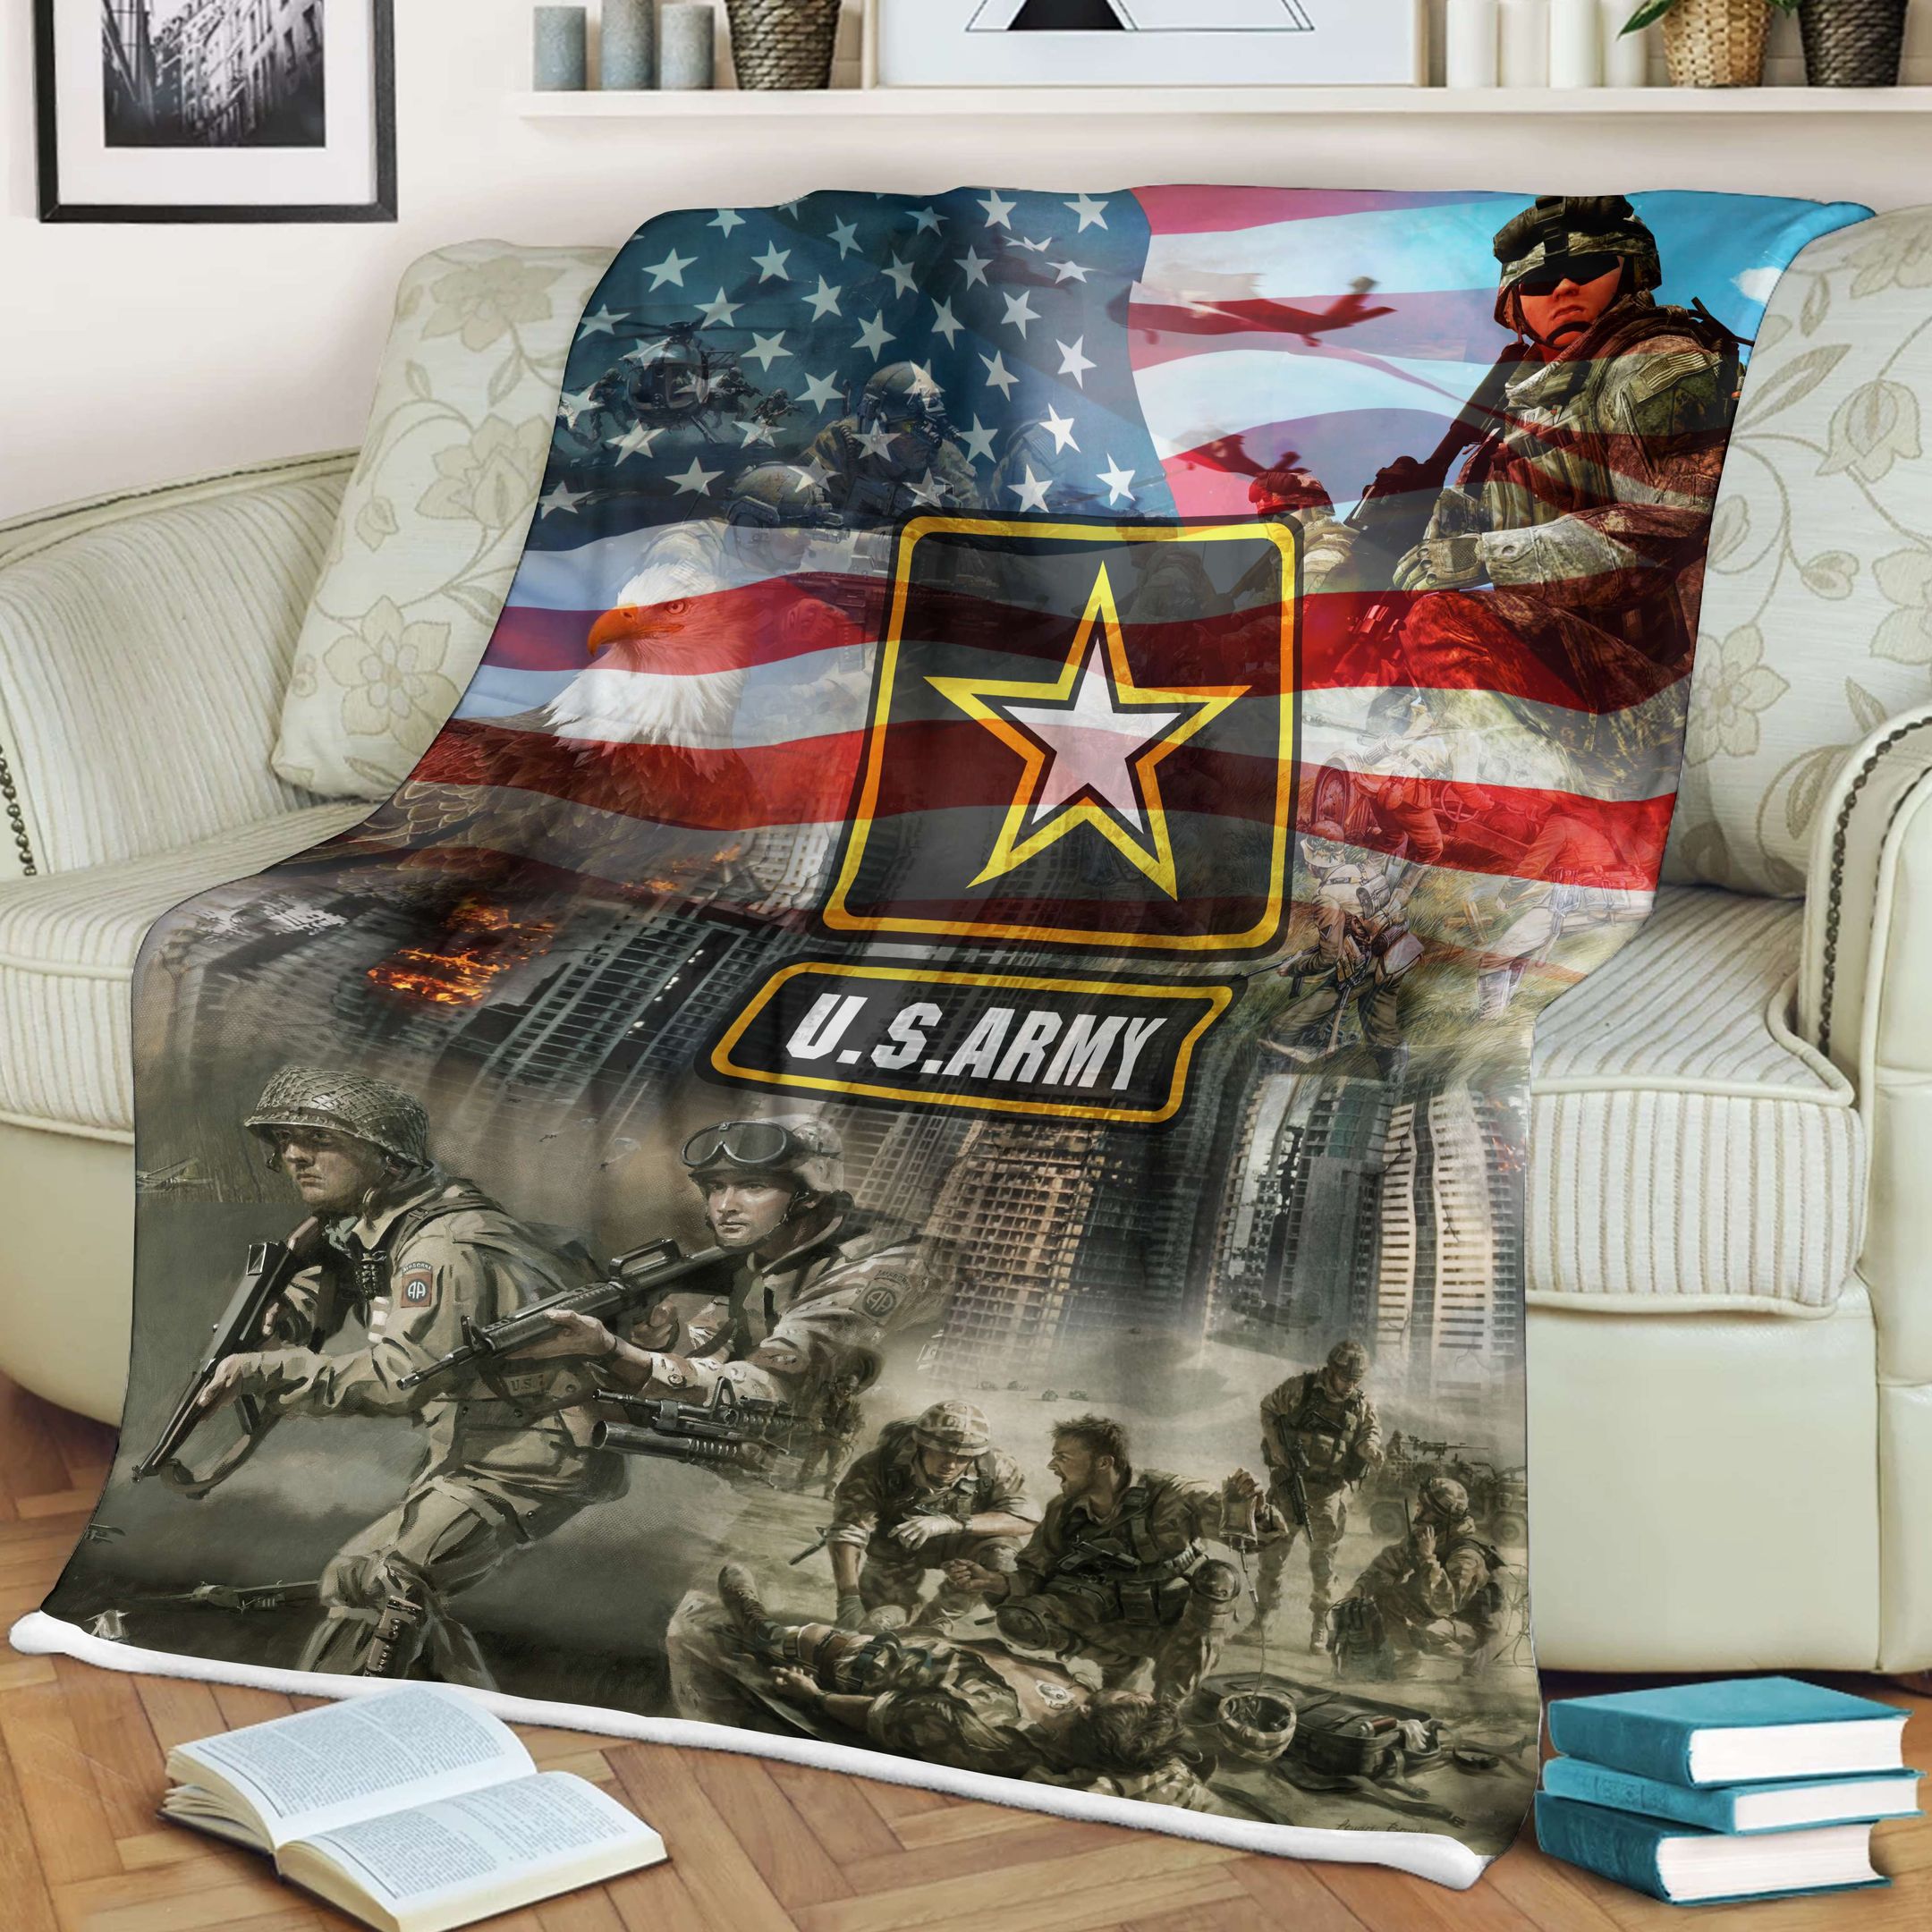 U.S Army Soft and Warm Fleece Blanket